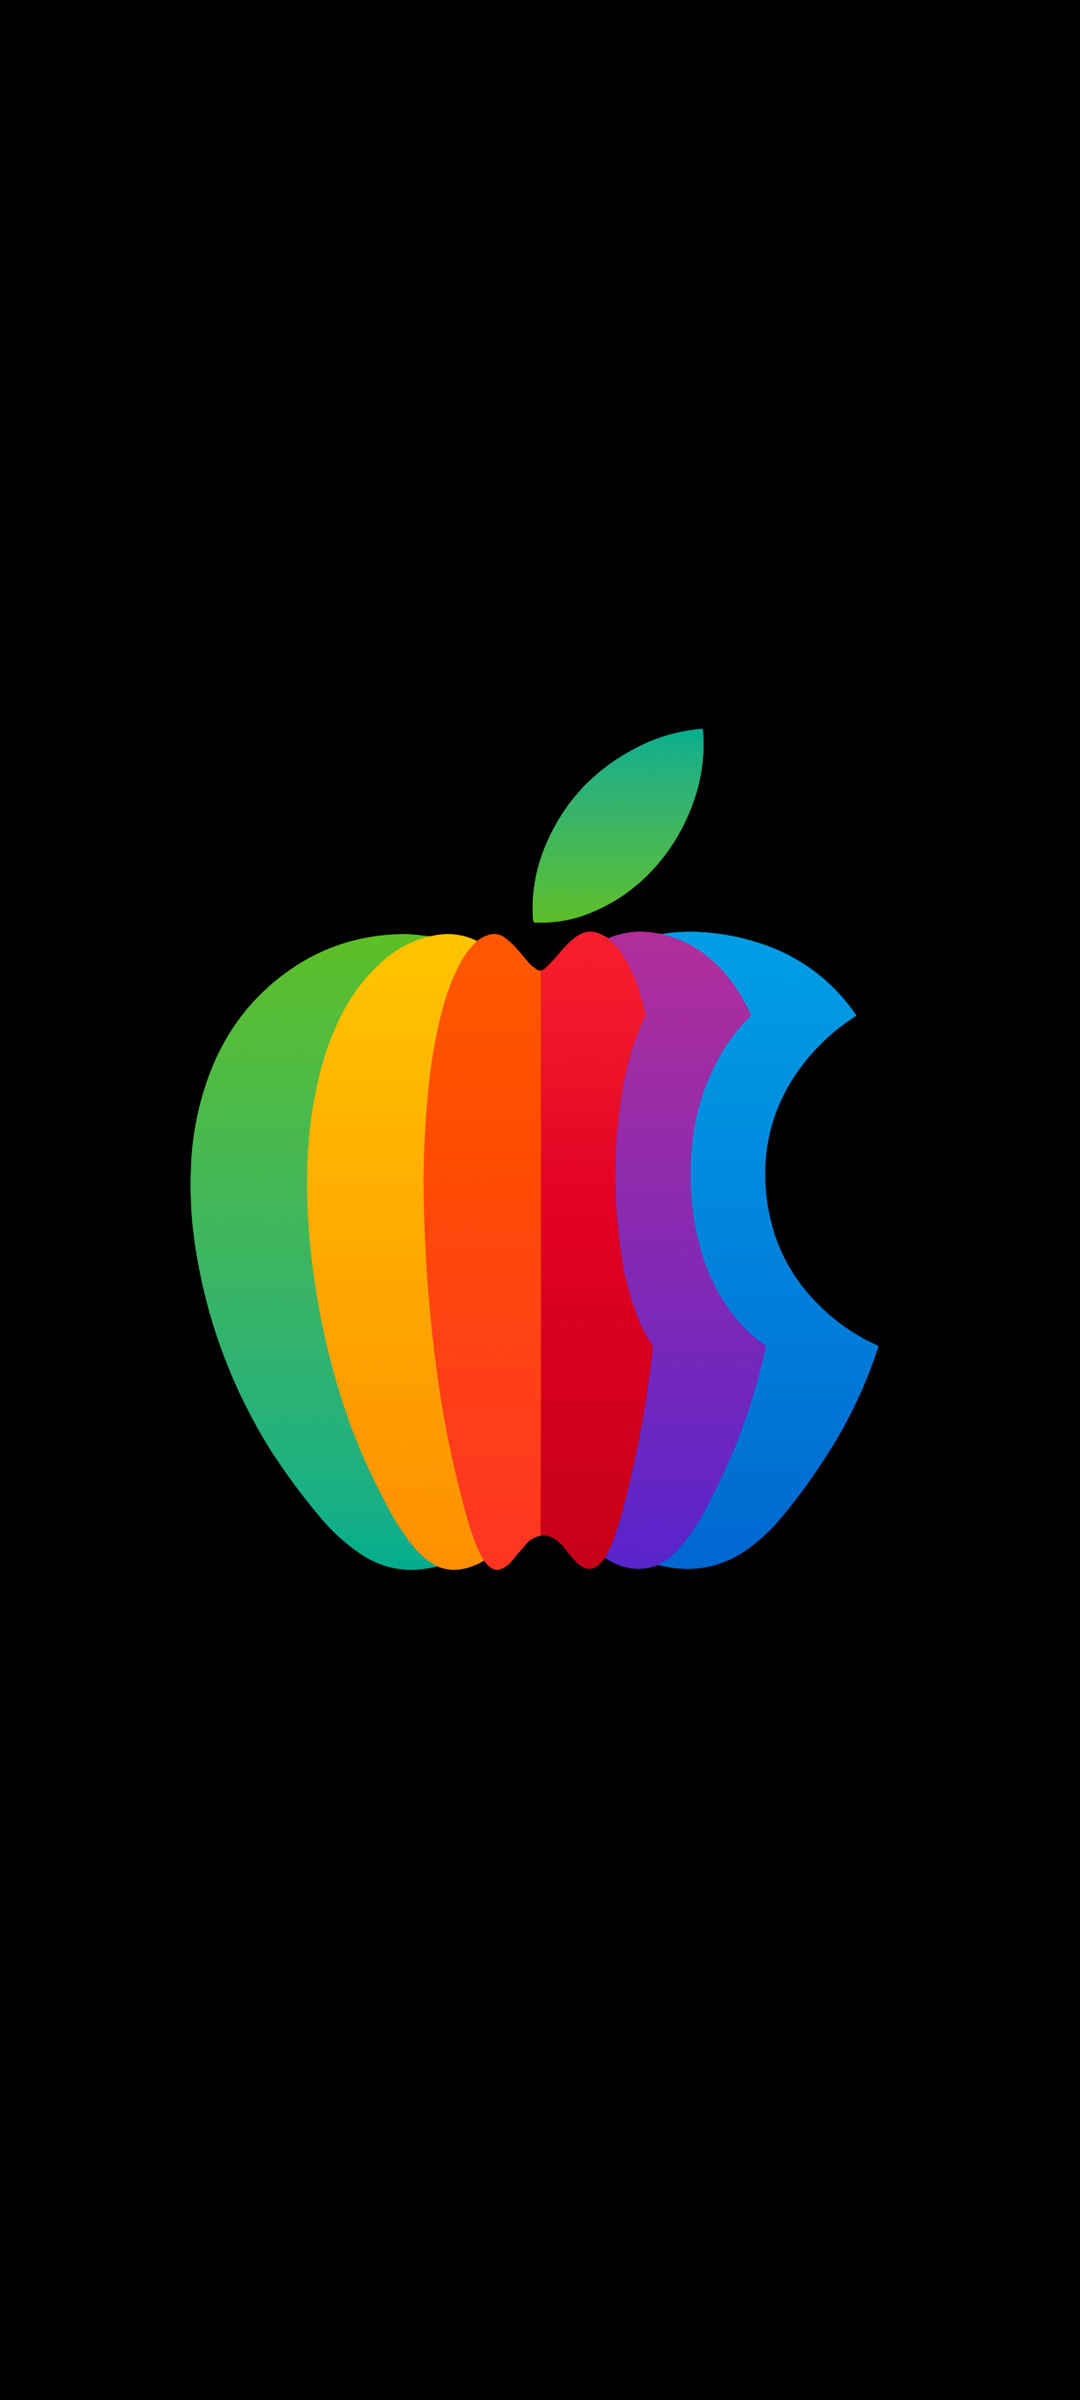 黑色背景苹果Apple彩色Logo 手机壁纸